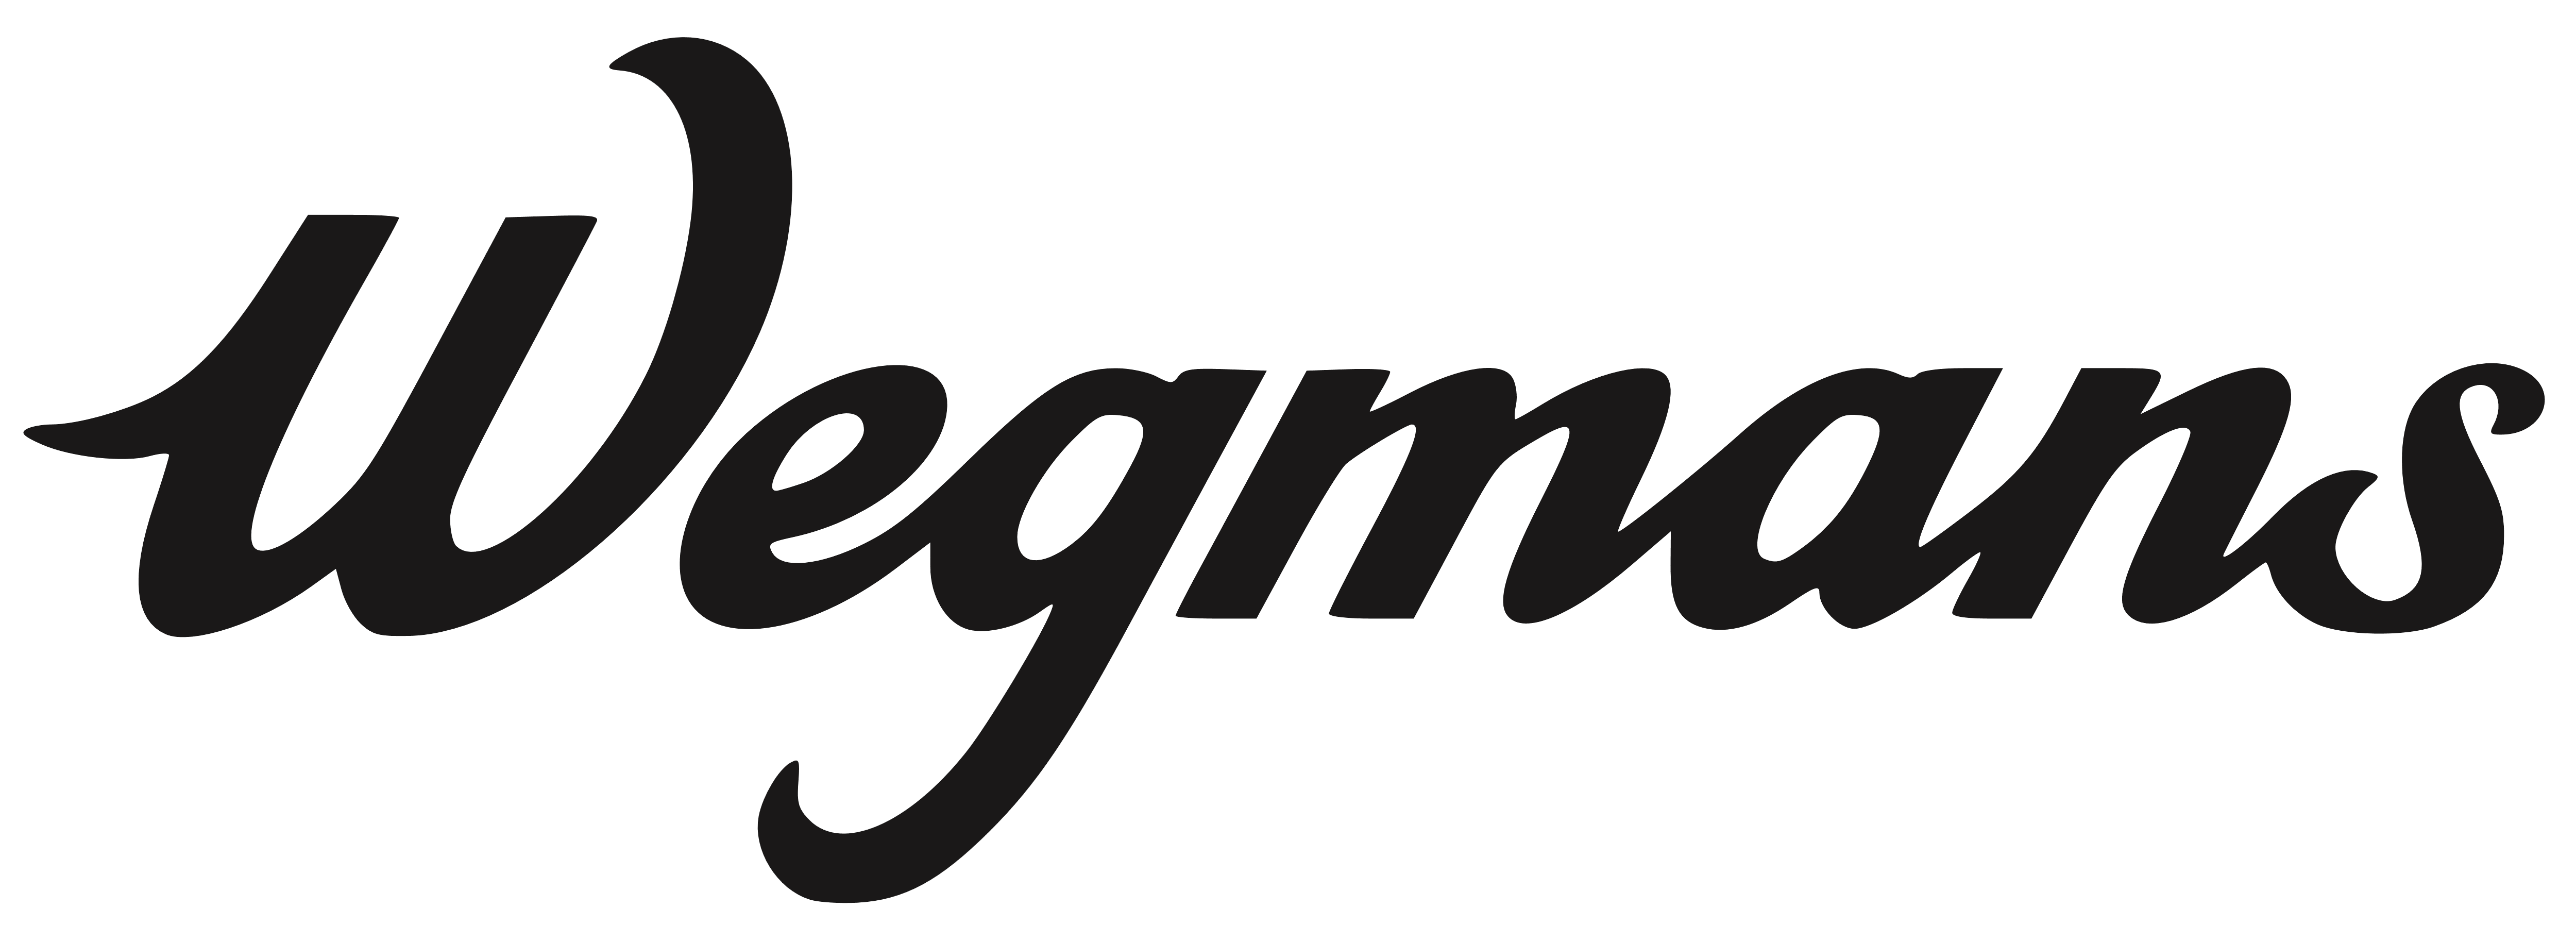 Wegmans_logo_light_black.png